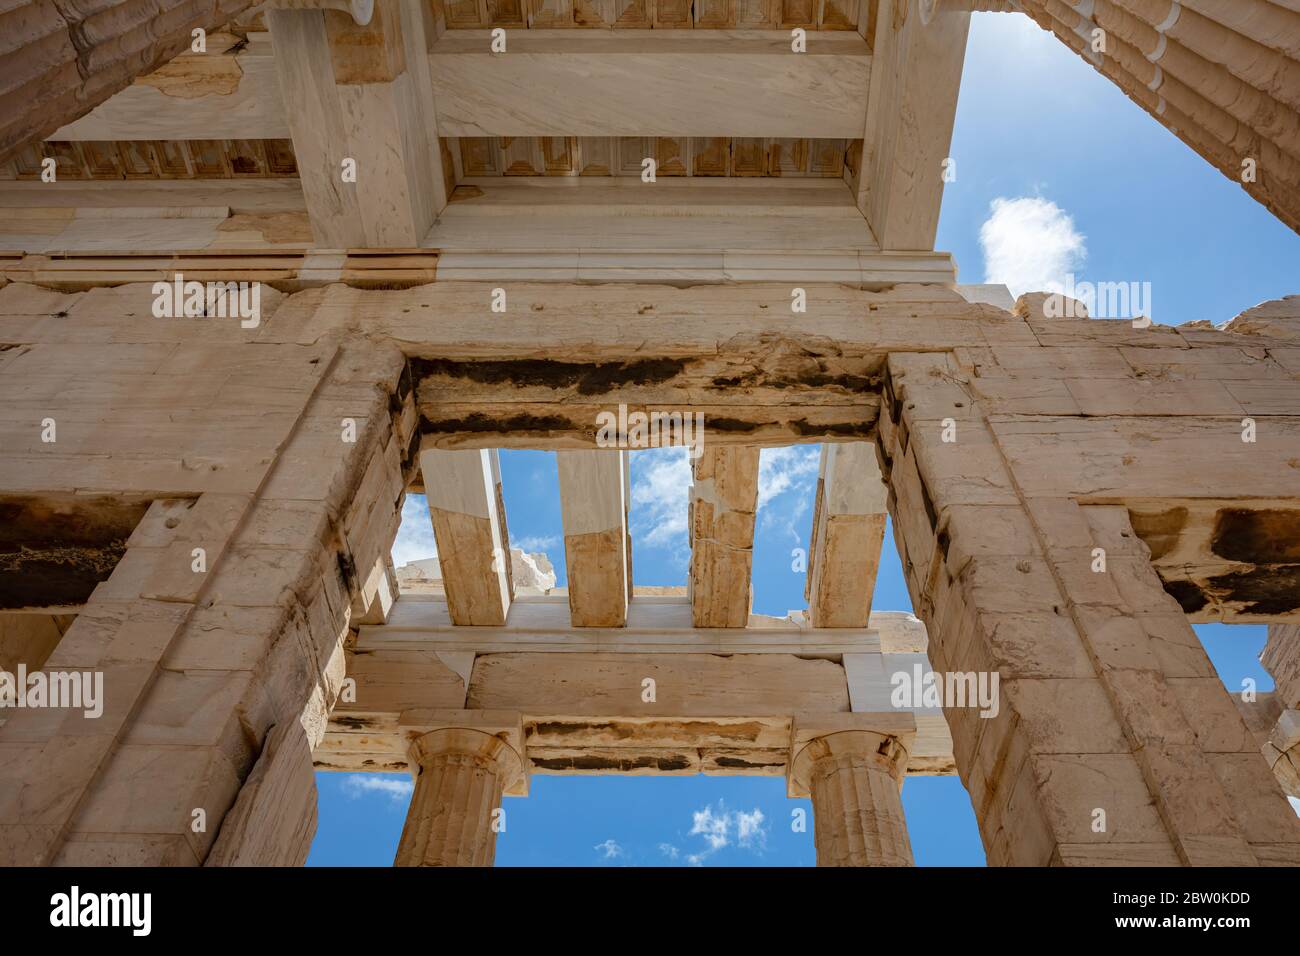 Akropolis von Athen, Griechenland Wahrzeichen. Antike griechische Propylaea Eingang Tor Decke und Säulen niedrigen Winkel Blick, blauer Himmel, Frühling sonnigen Tag. Stockfoto